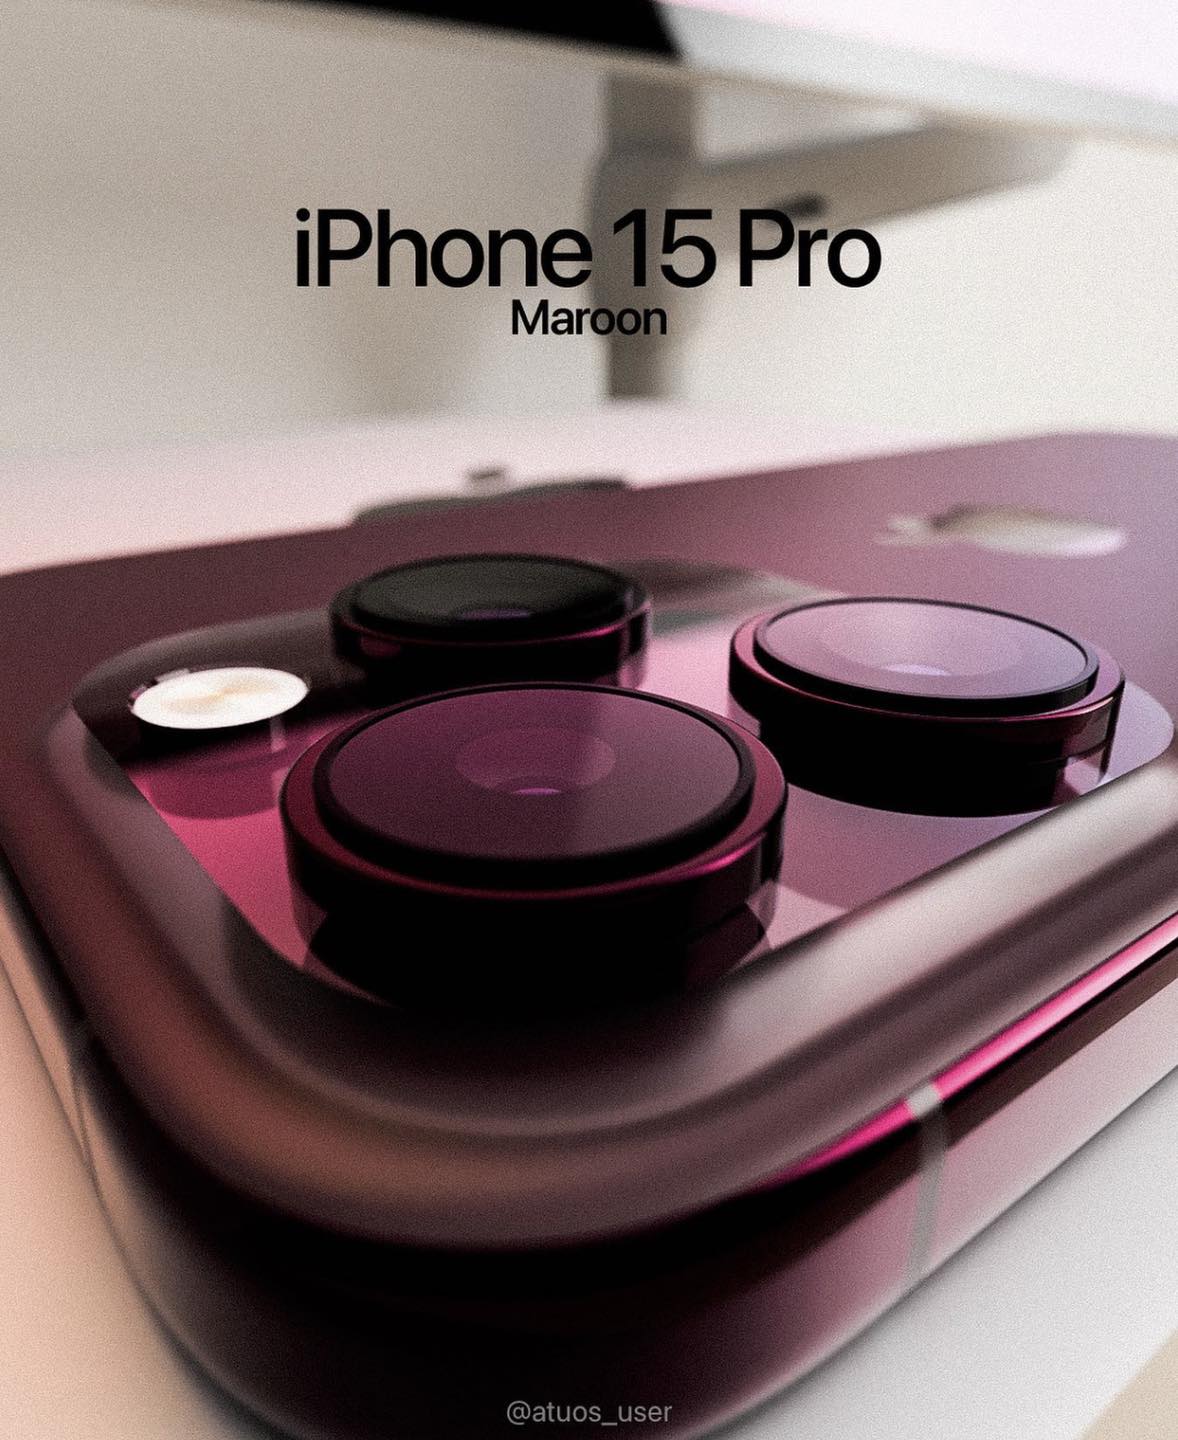 Trọn bộ ý tưởng iPhone 15 với màu sắc siêu đẹp, ấn tượng với màu đỏ rượu vang cực kỳ lạ mắt - Ảnh 4.